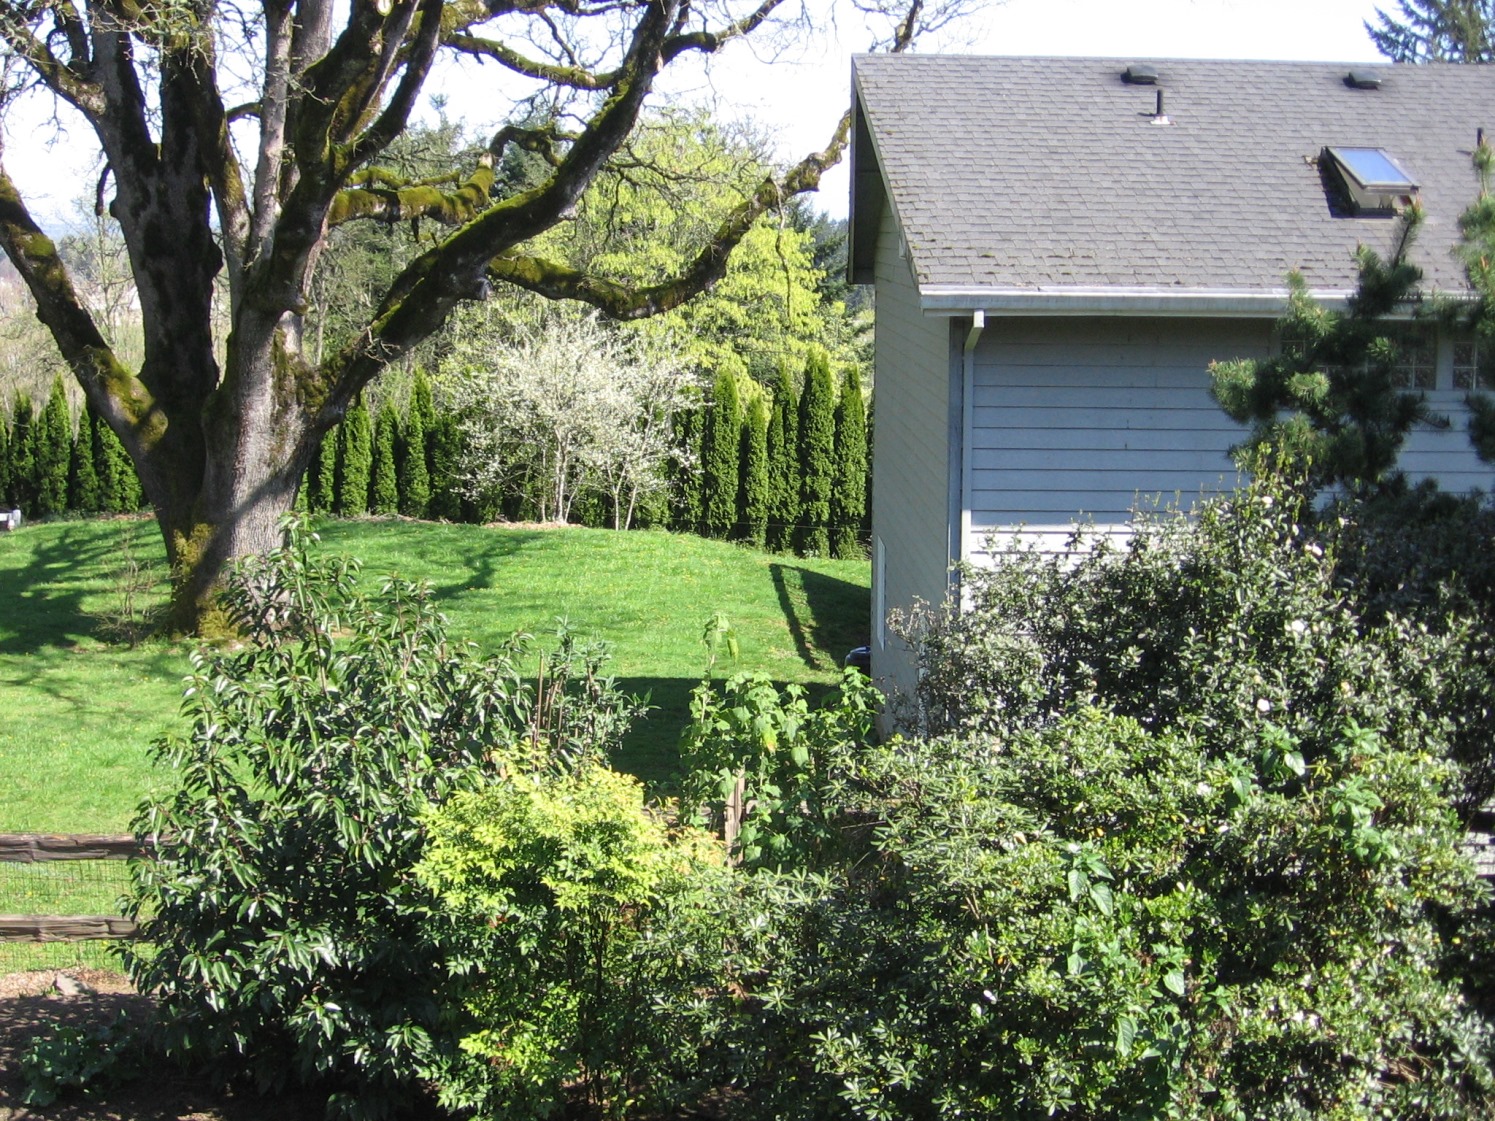 2007年4月6日。从我家看出去的风景。注意邻居的房子。它有两层楼高。